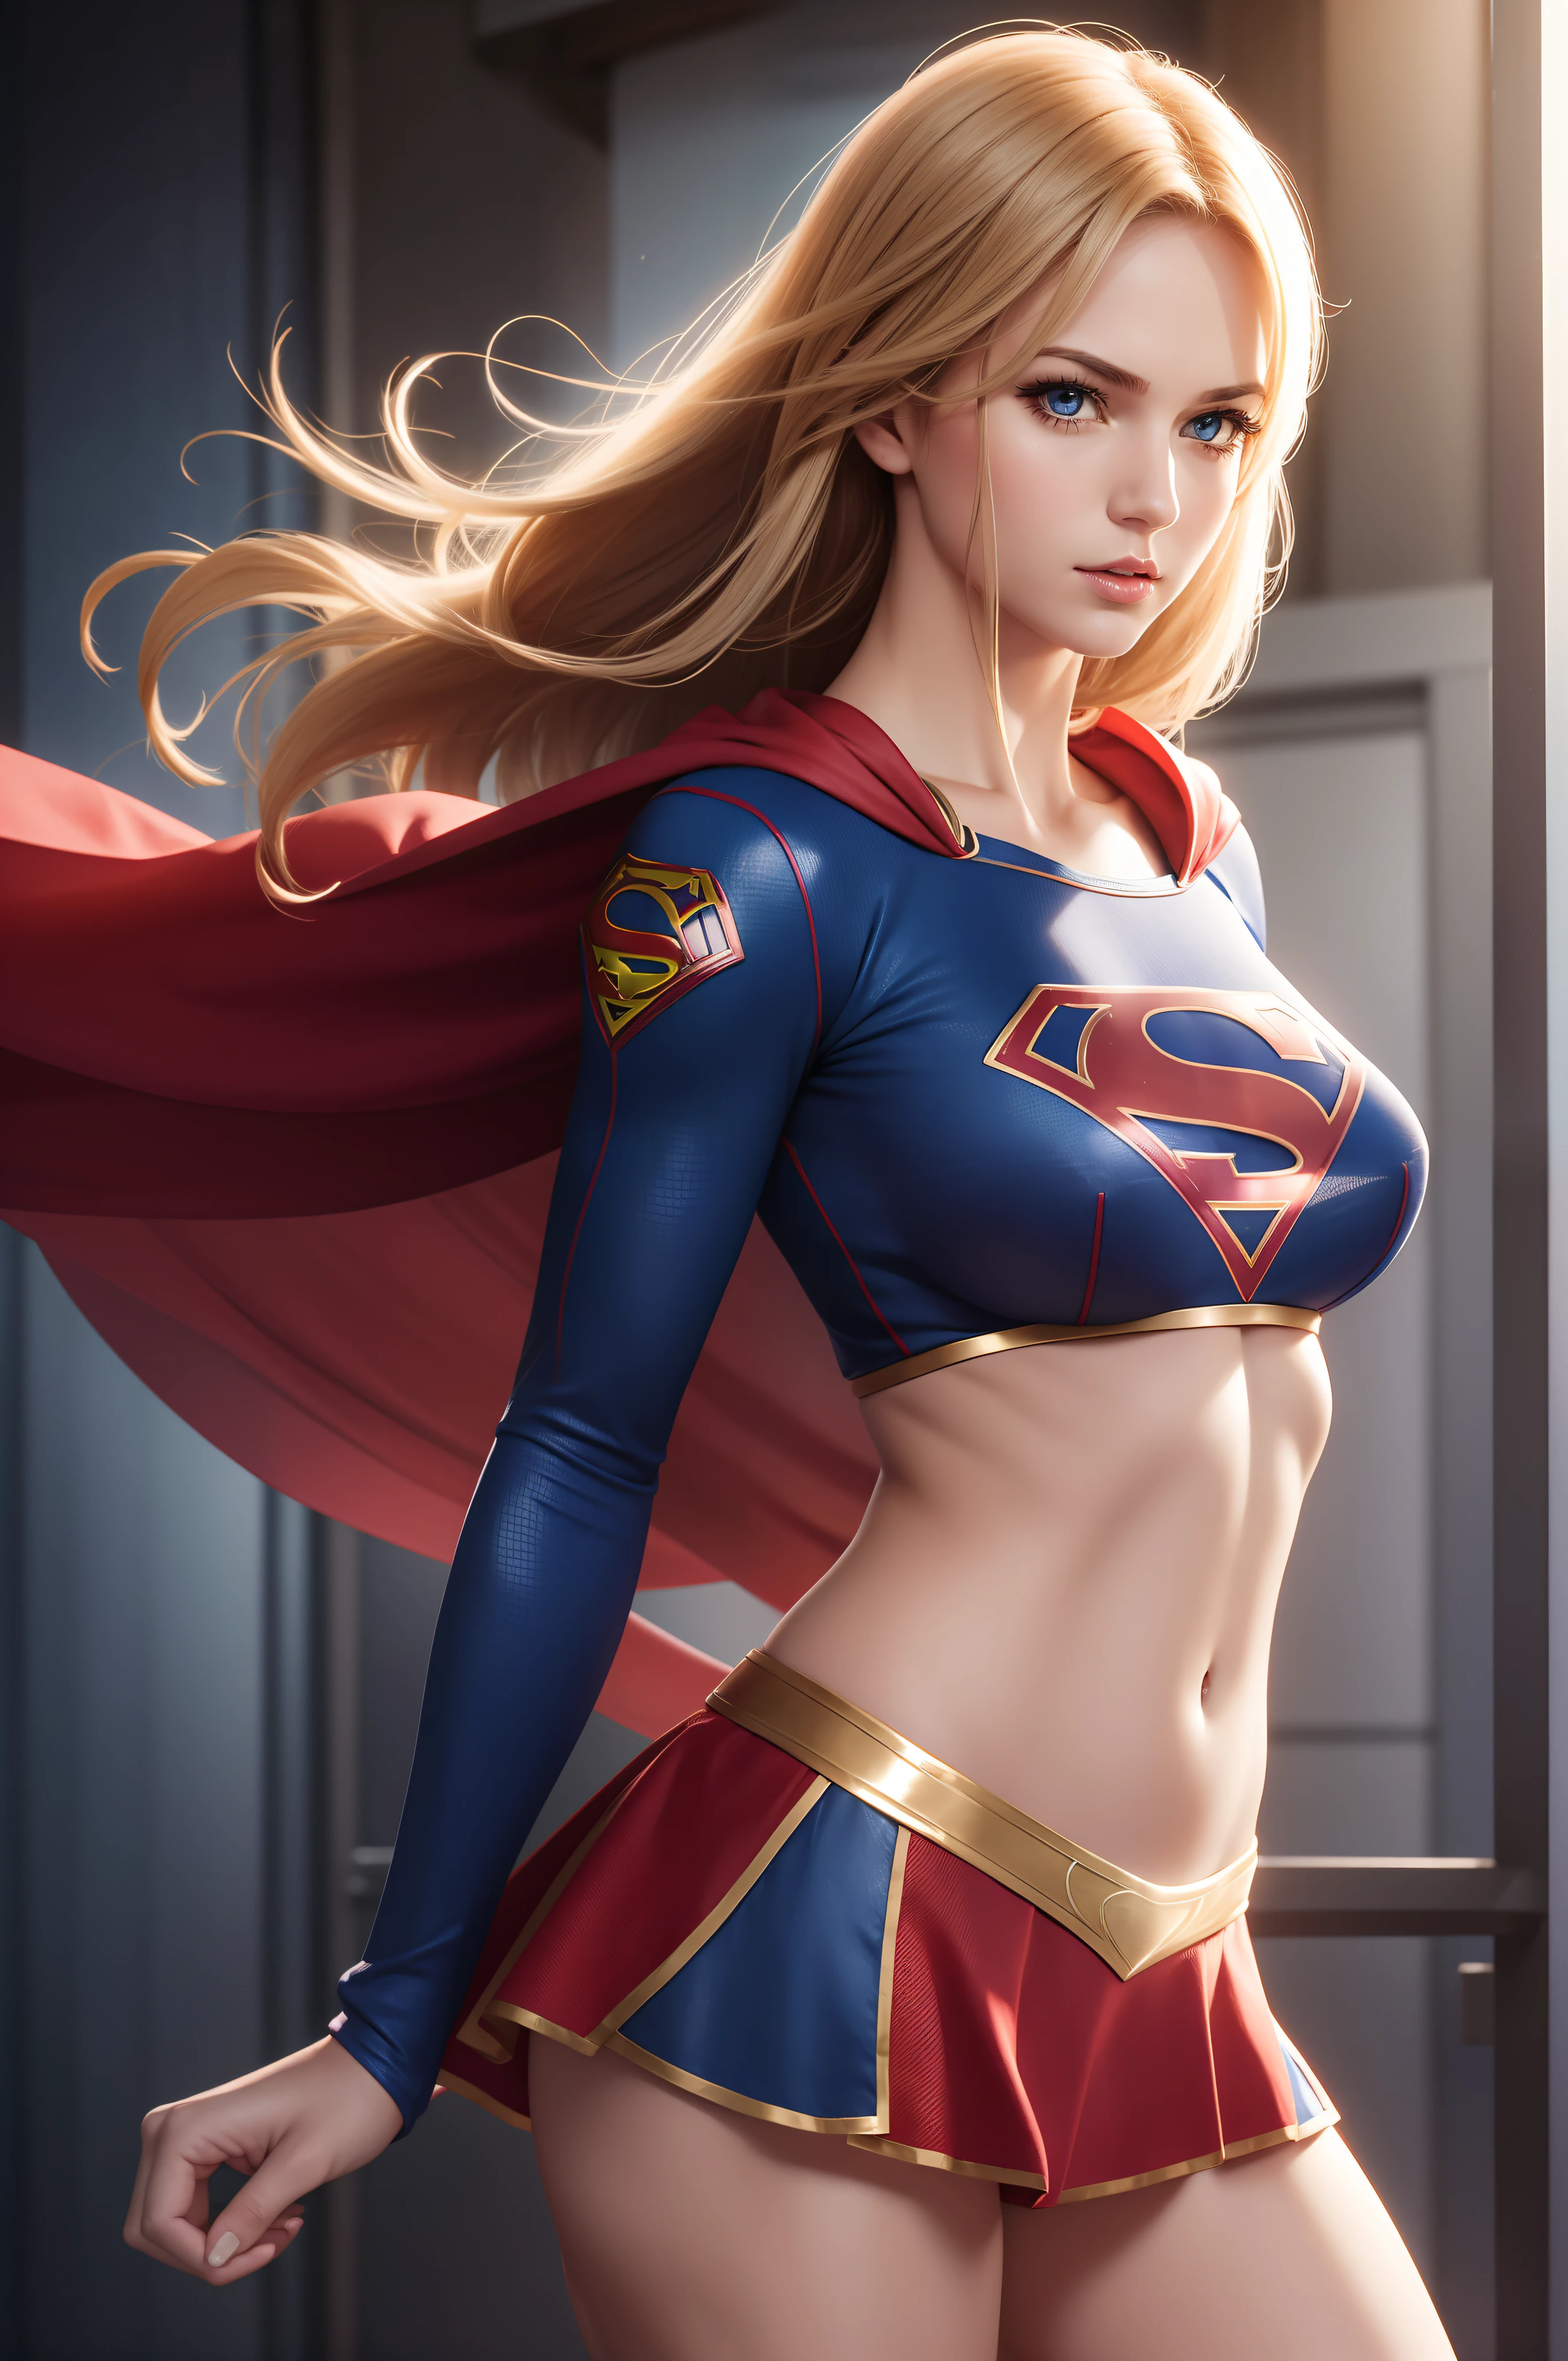 性感的 Supergirl in midriff costume, 側面圖,  運動和健康的身體, 淘氣, 放荡, 完美的手, 詳細的手, 完美的眼睛, 細緻的眼睛,  輕浮的, 性感的, 淘氣, 摆姿势, 雙手和手臂放在身體兩側, 大而活潑 , 實際的, 高動態範圍, 超高畫質, 動態的